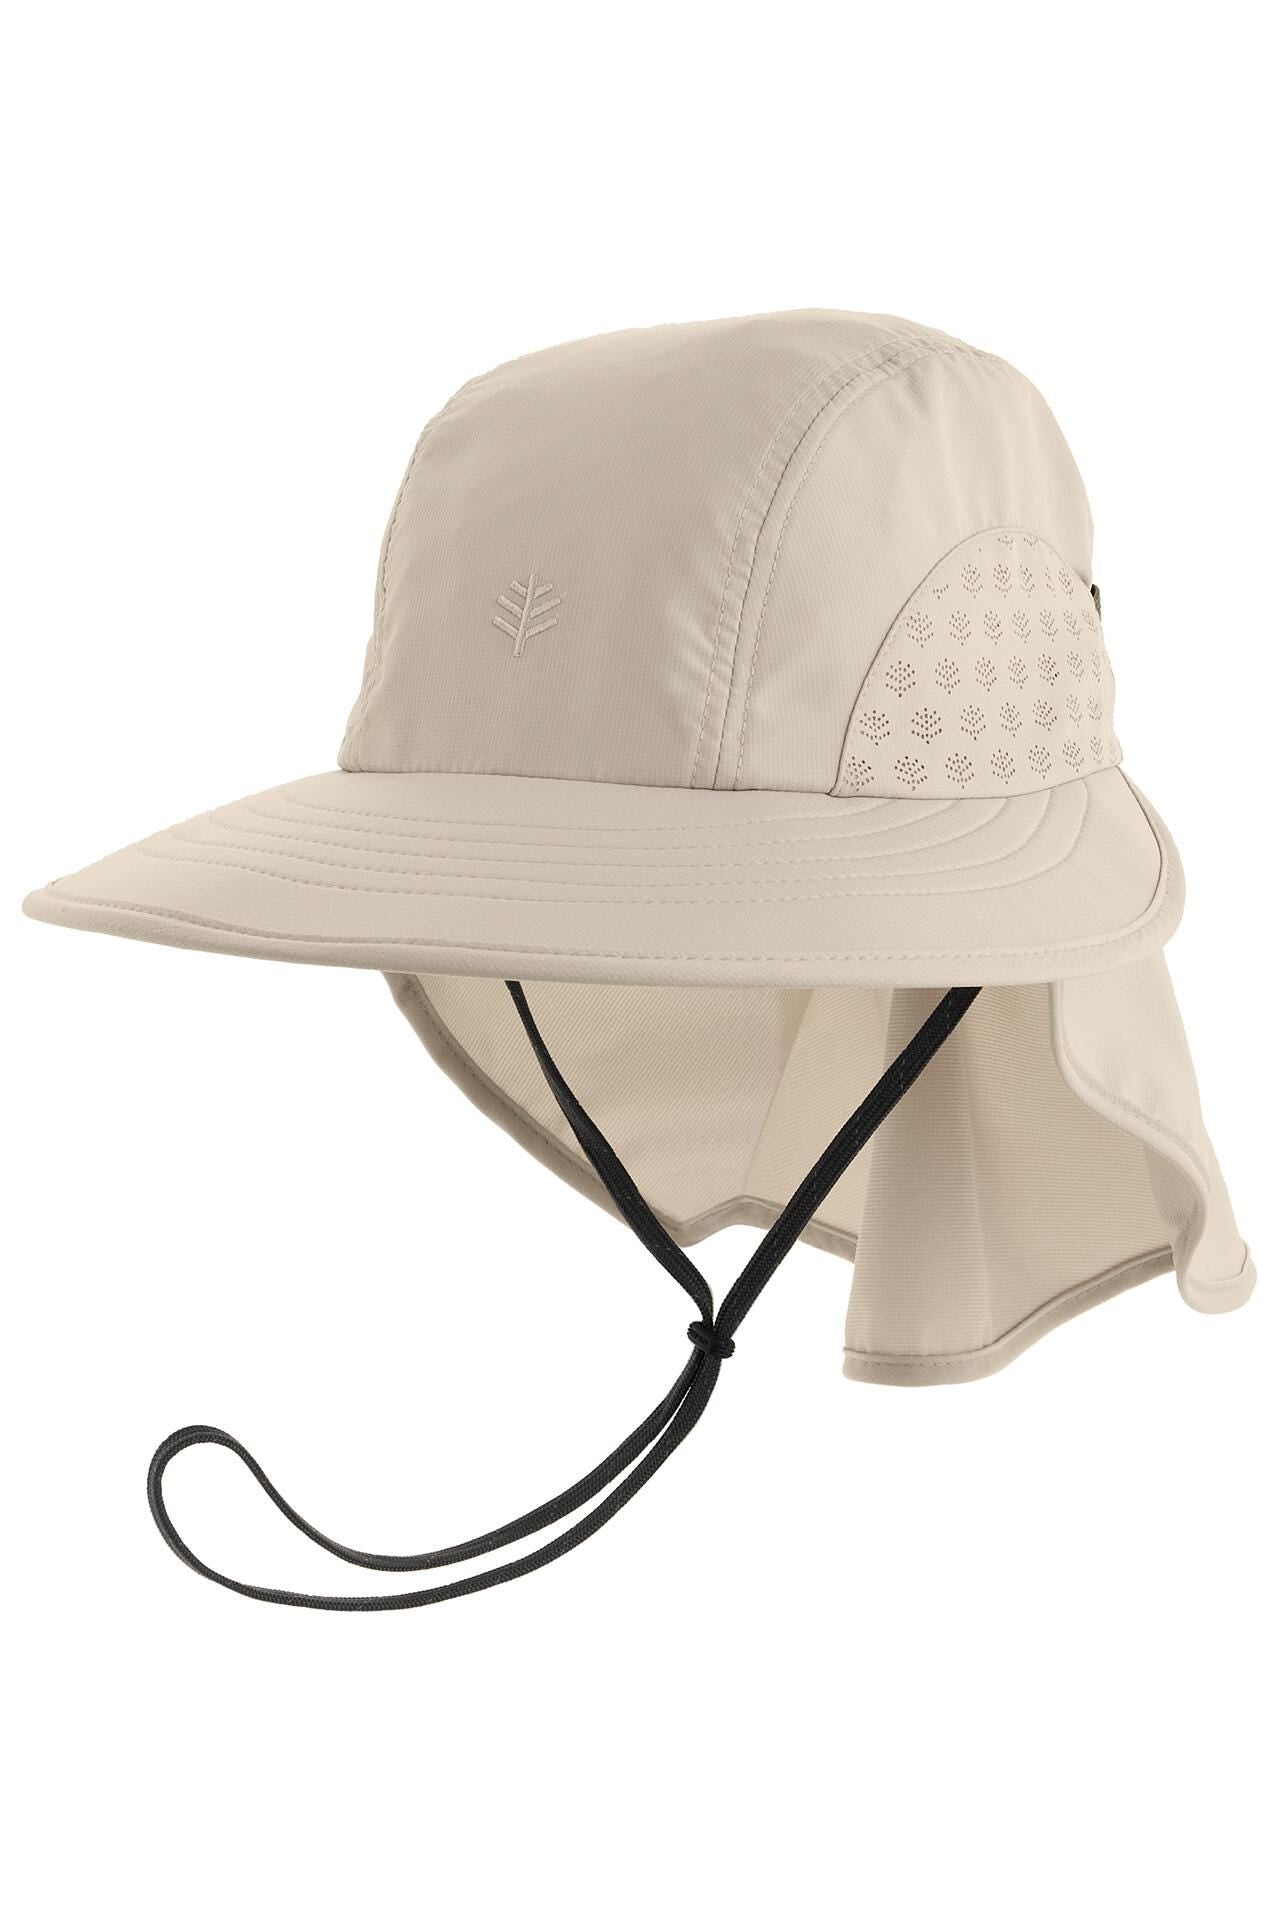 Coolibar Explorer Hat UPF 50+, Midnight / L/XL